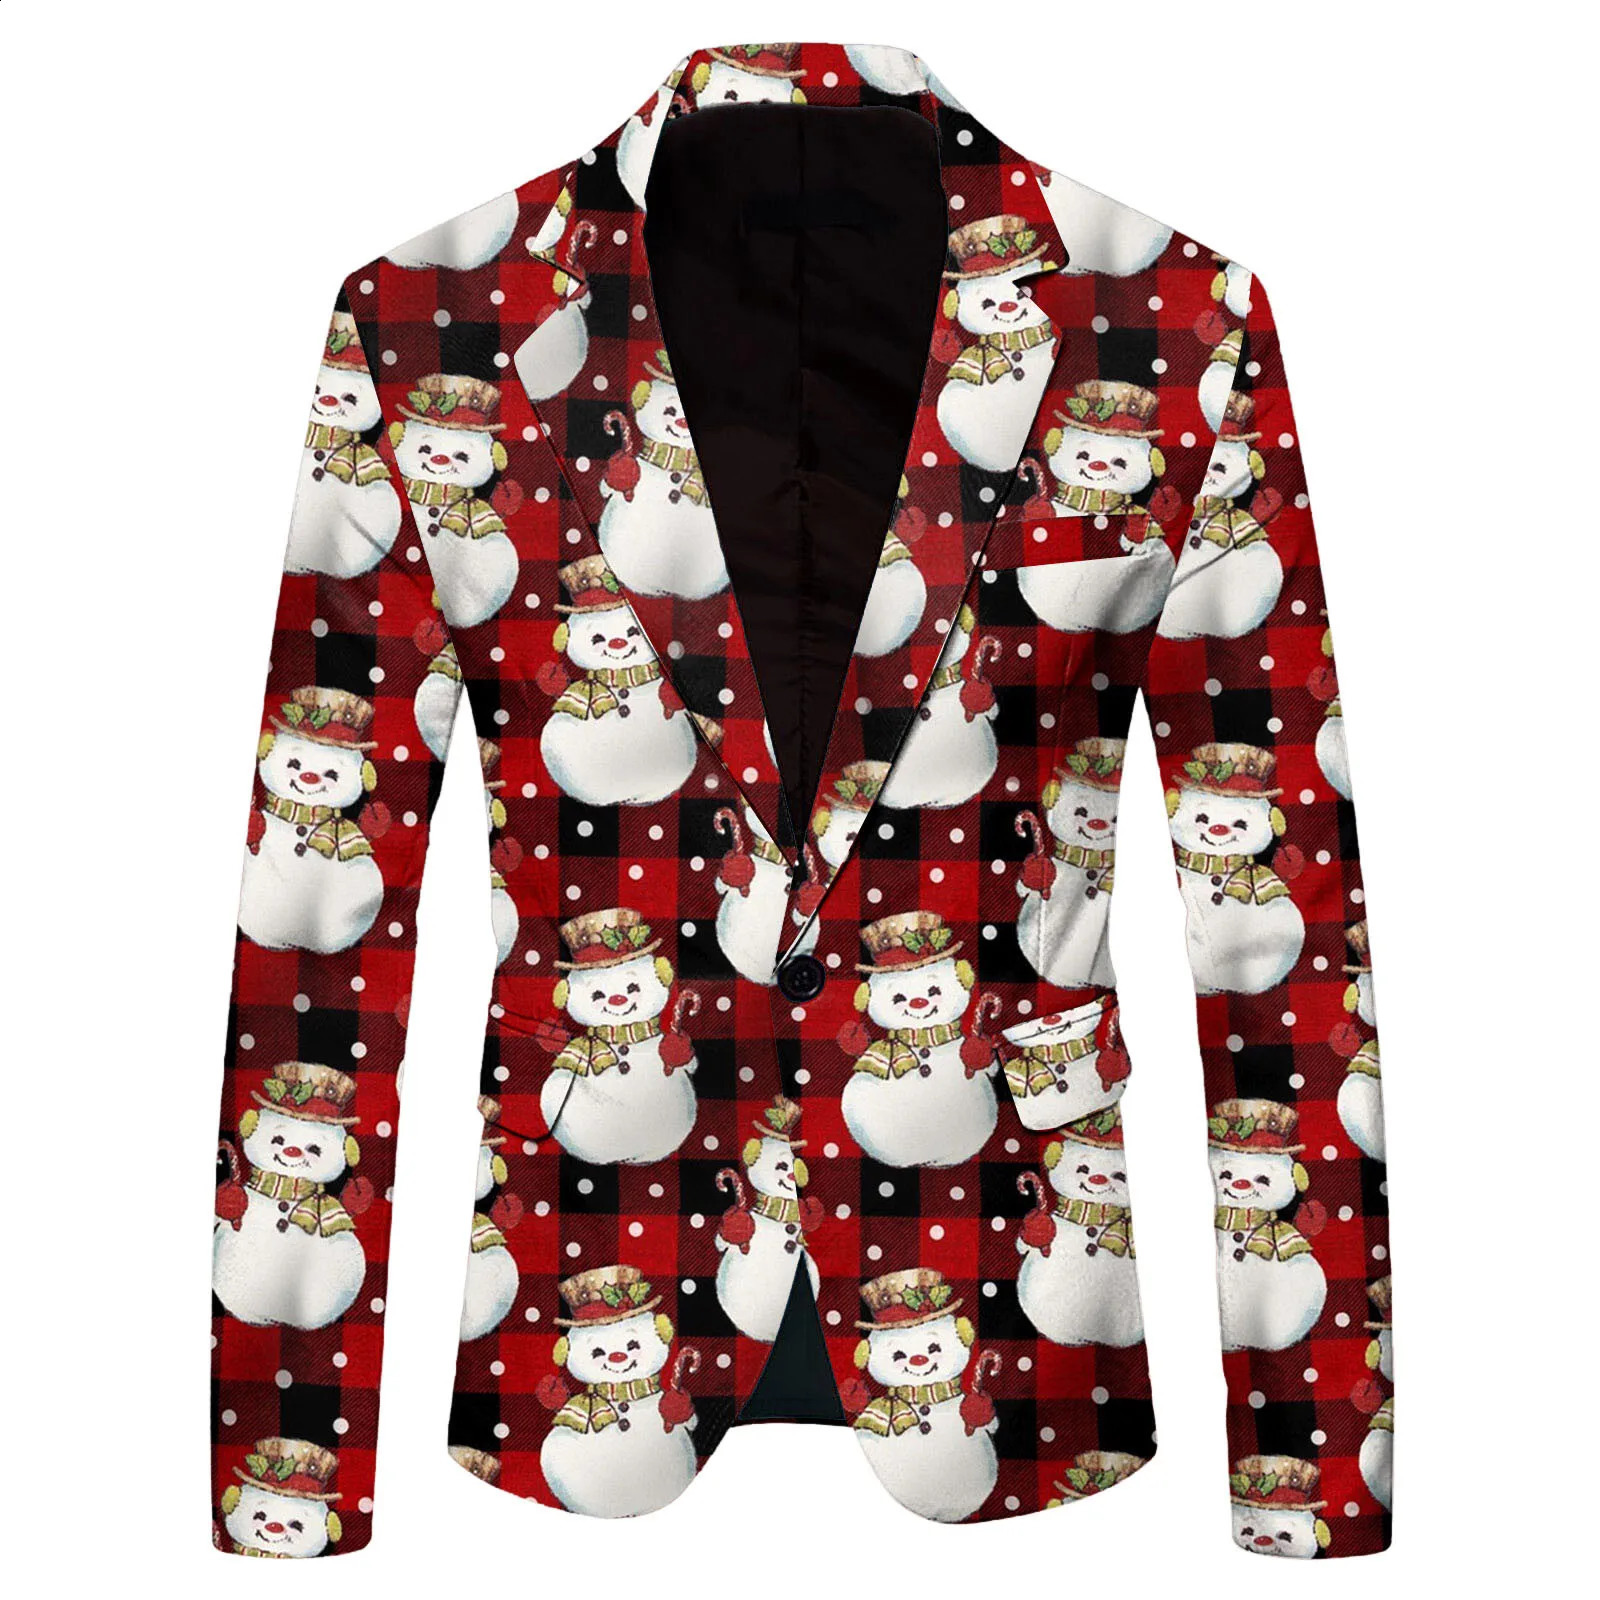 メンズスーツブレザーファッションサンタクロースプリントスーツジャケットメンズクリスマスコート秋の冬のメンズマンのためのブレザージャケットクリスマスパーティージャケット231214